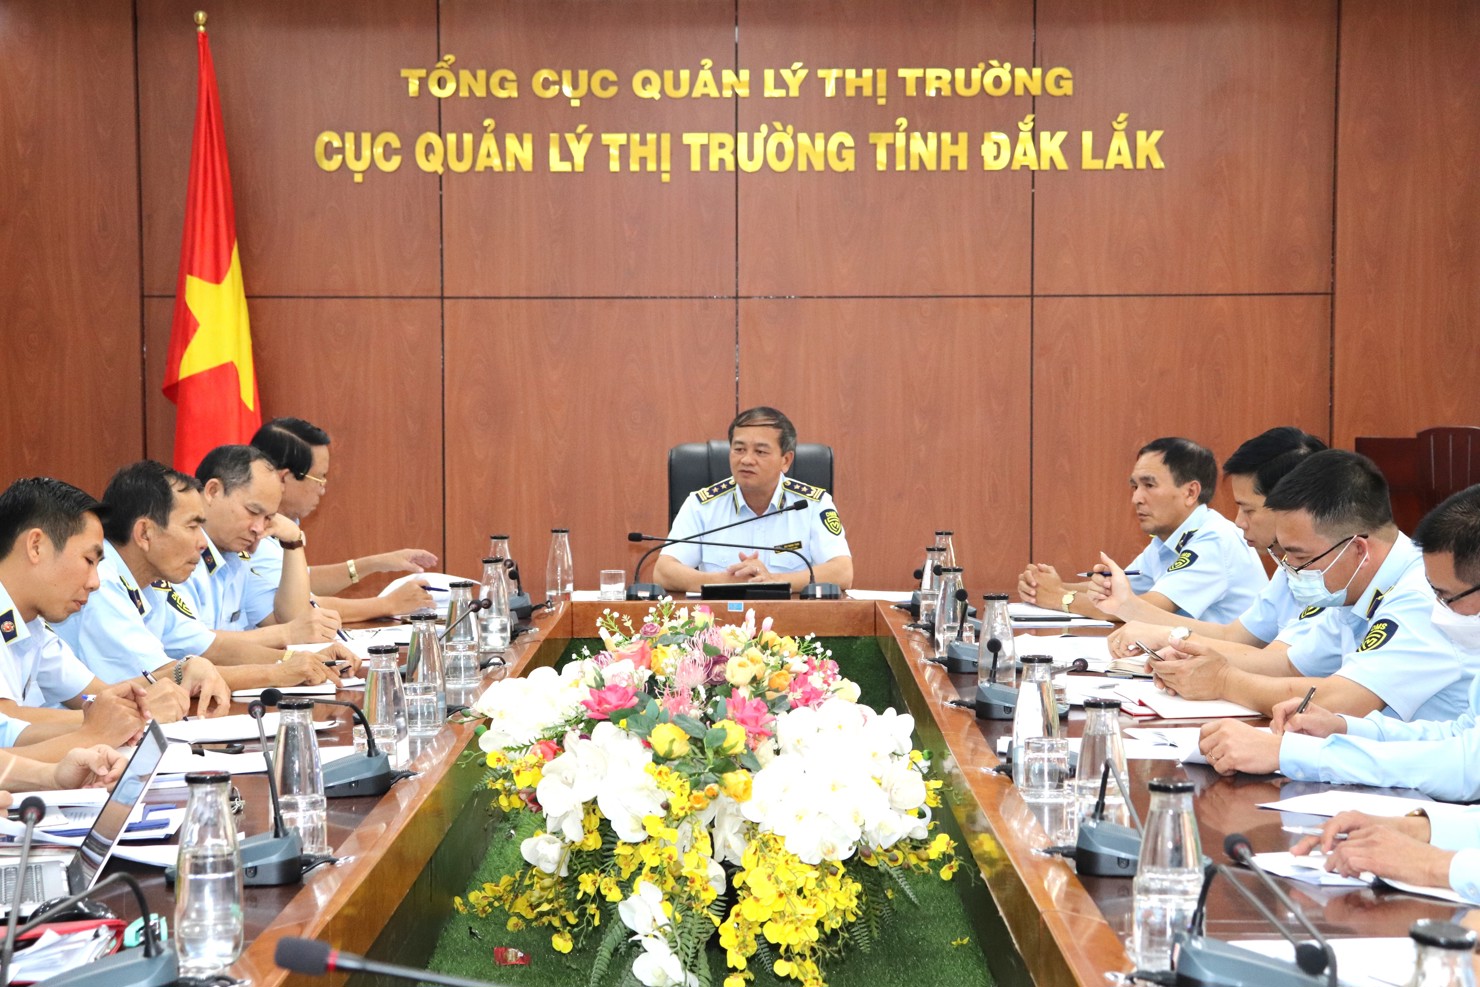 Đồng chí Mai Mạnh Toàn - Cục trưởng Cục Quản lý thị trường tỉnh Đắk Lắk chỉ đạo chuyên môn tại cuộc họp giao ban tháng 2/2023.